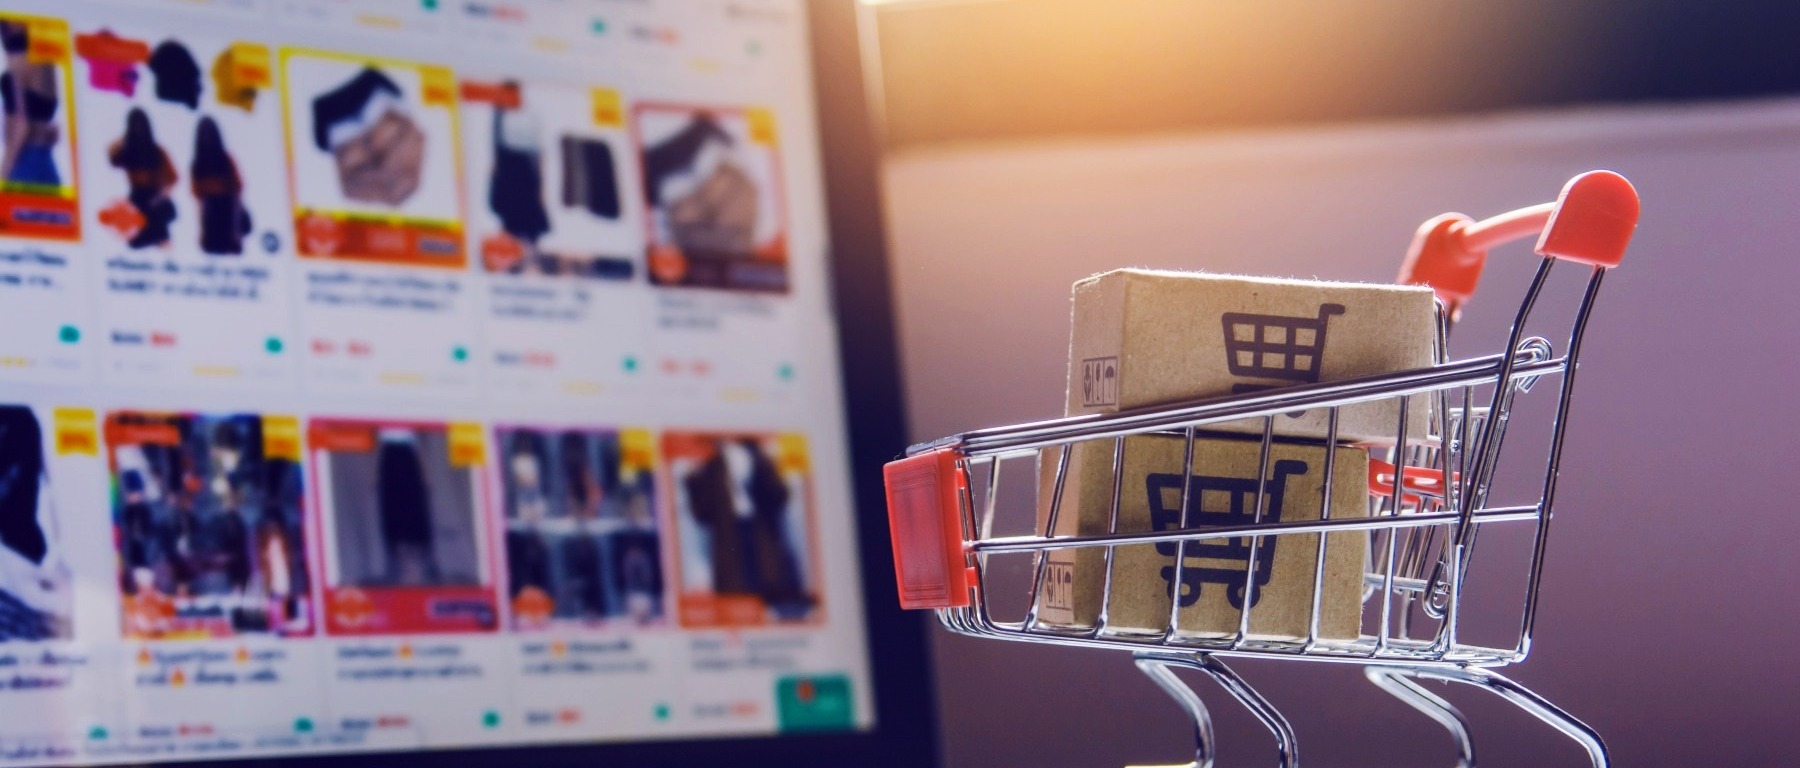 E-commerce e marketplace são duas maneiras de vender na internet